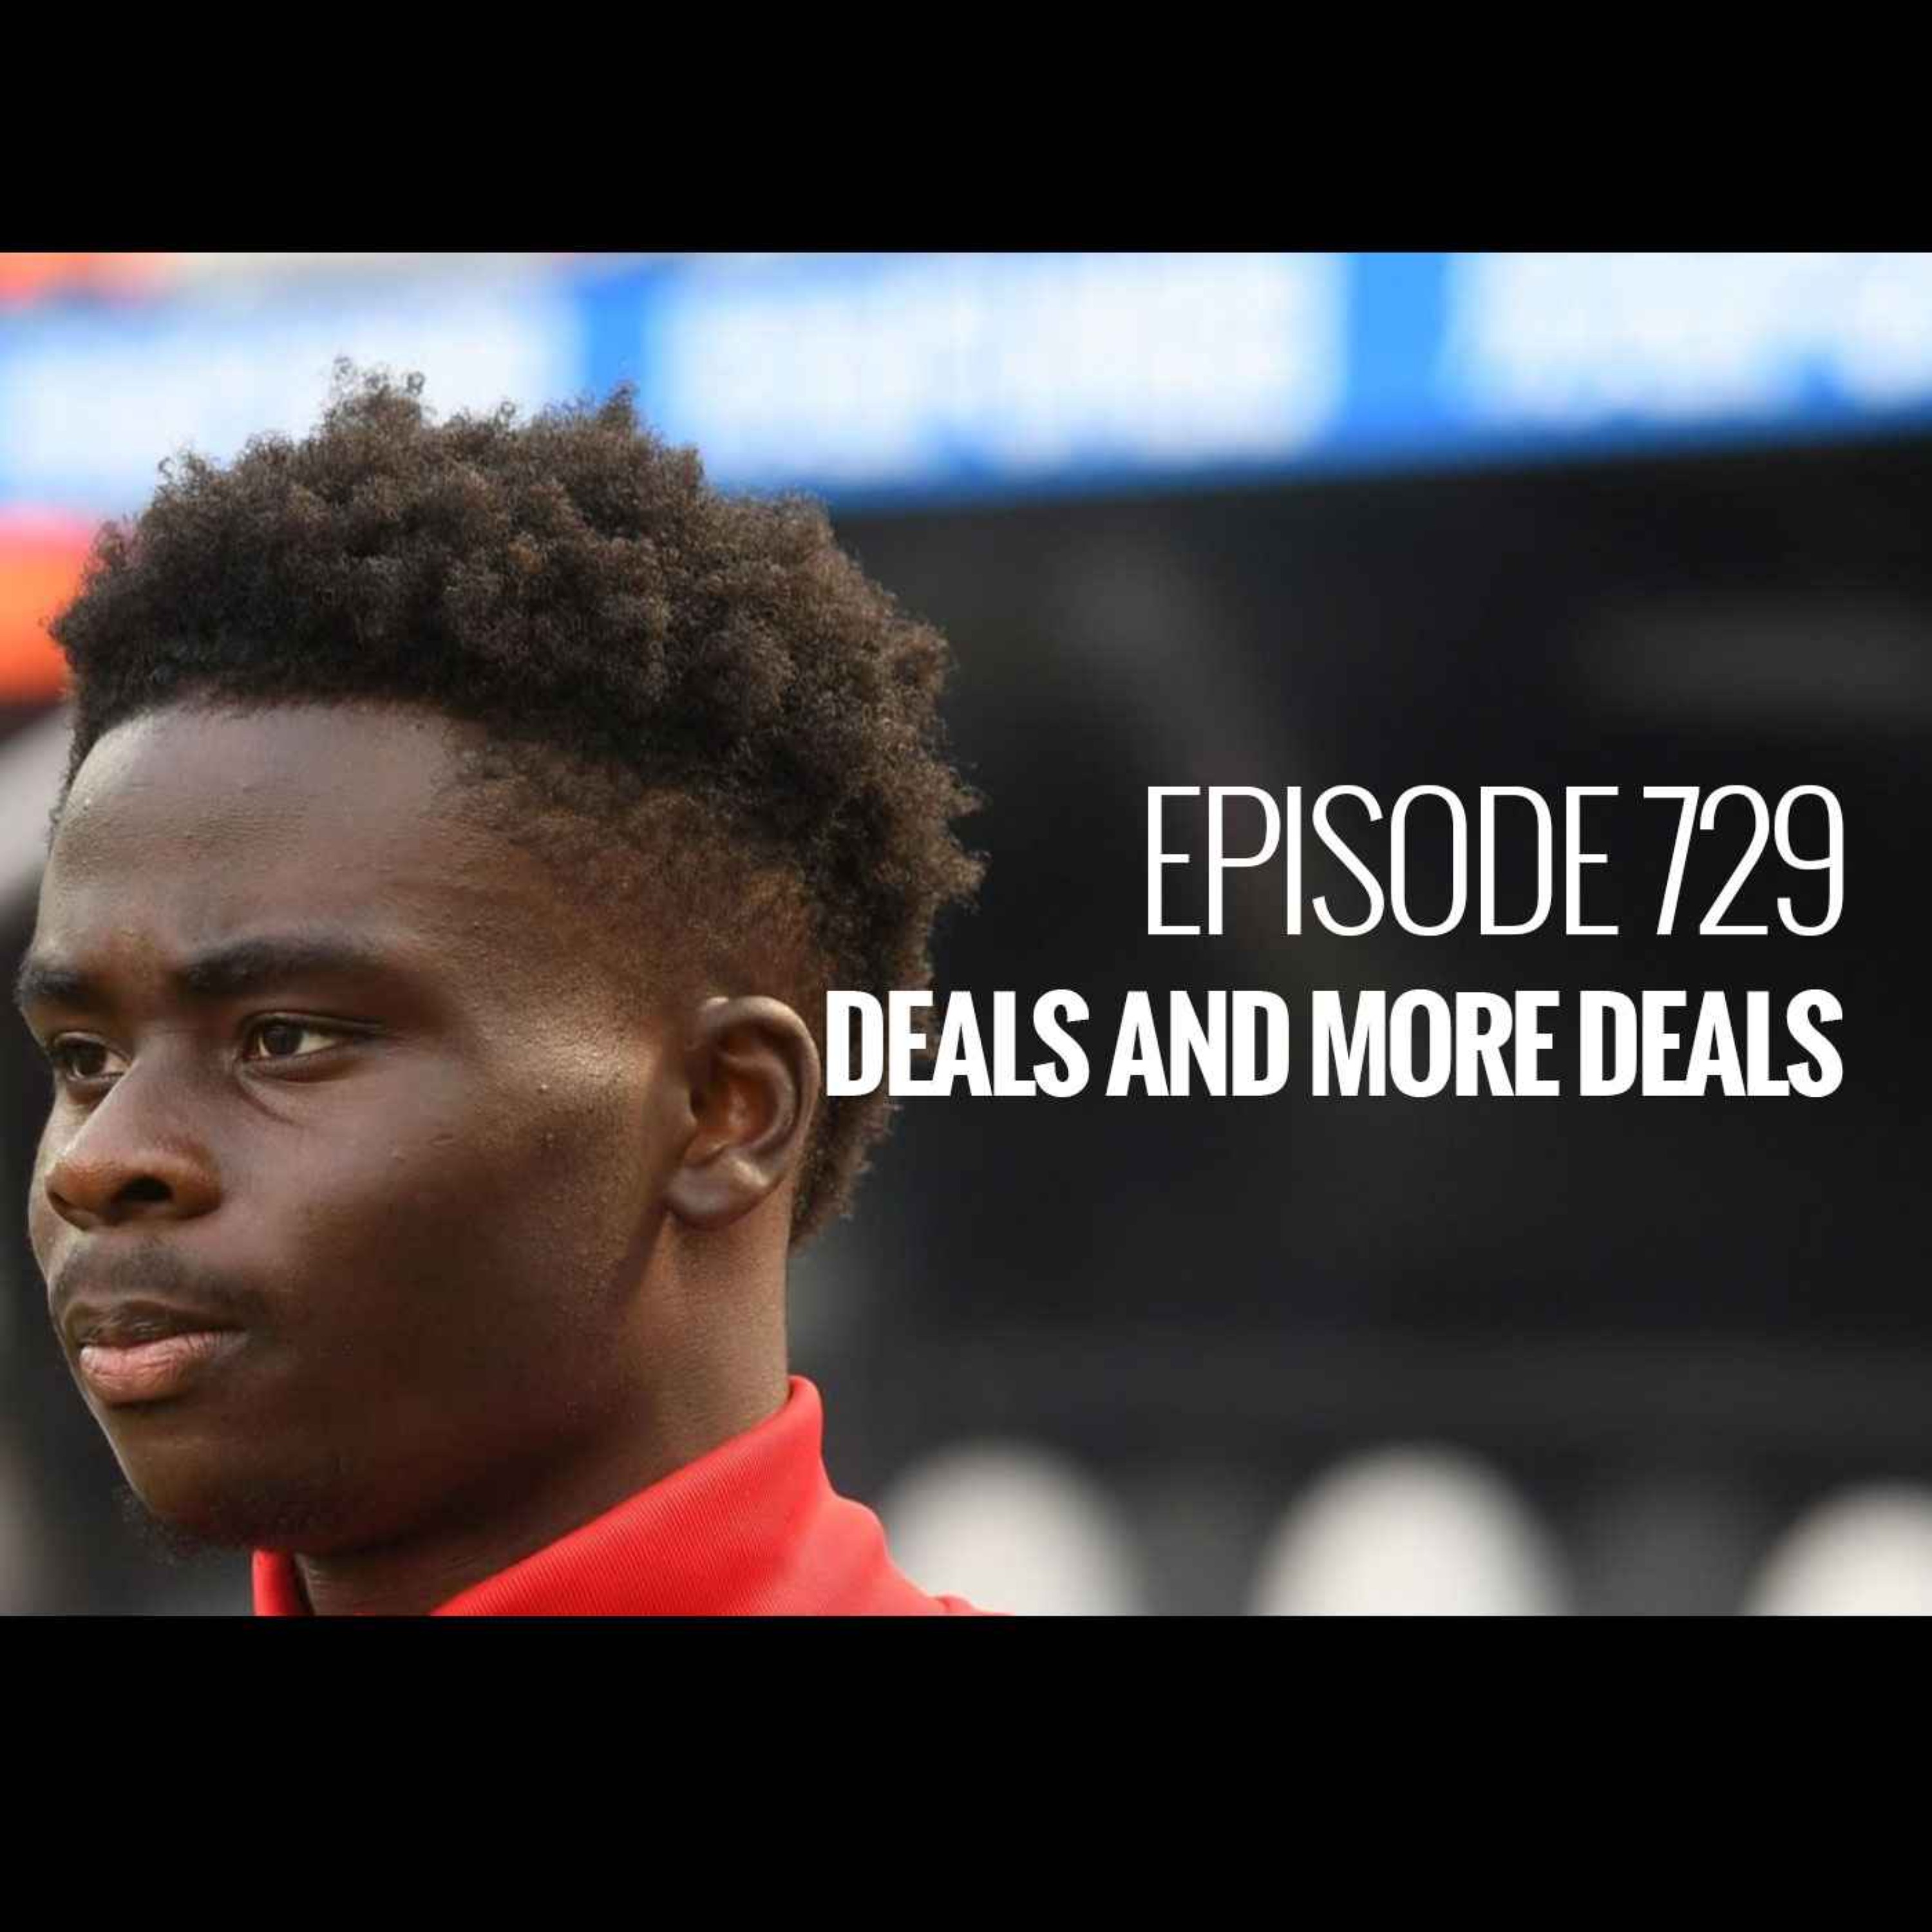 Episode 729 - Deals and more deals